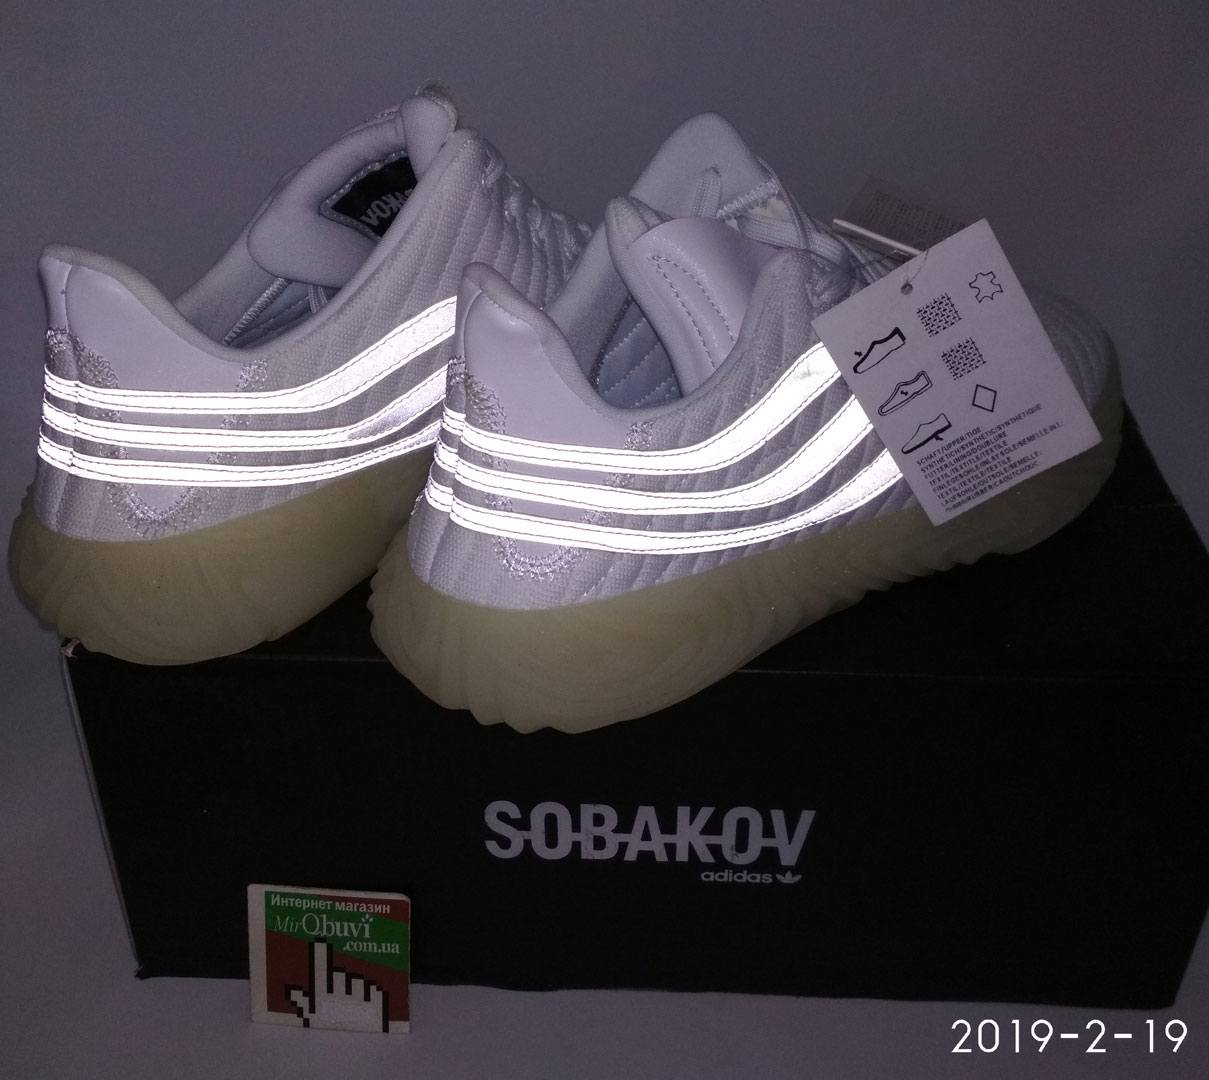 велике фото №5 Кросівки Adidas Sobakov білі, рефлективні. Топ якість!